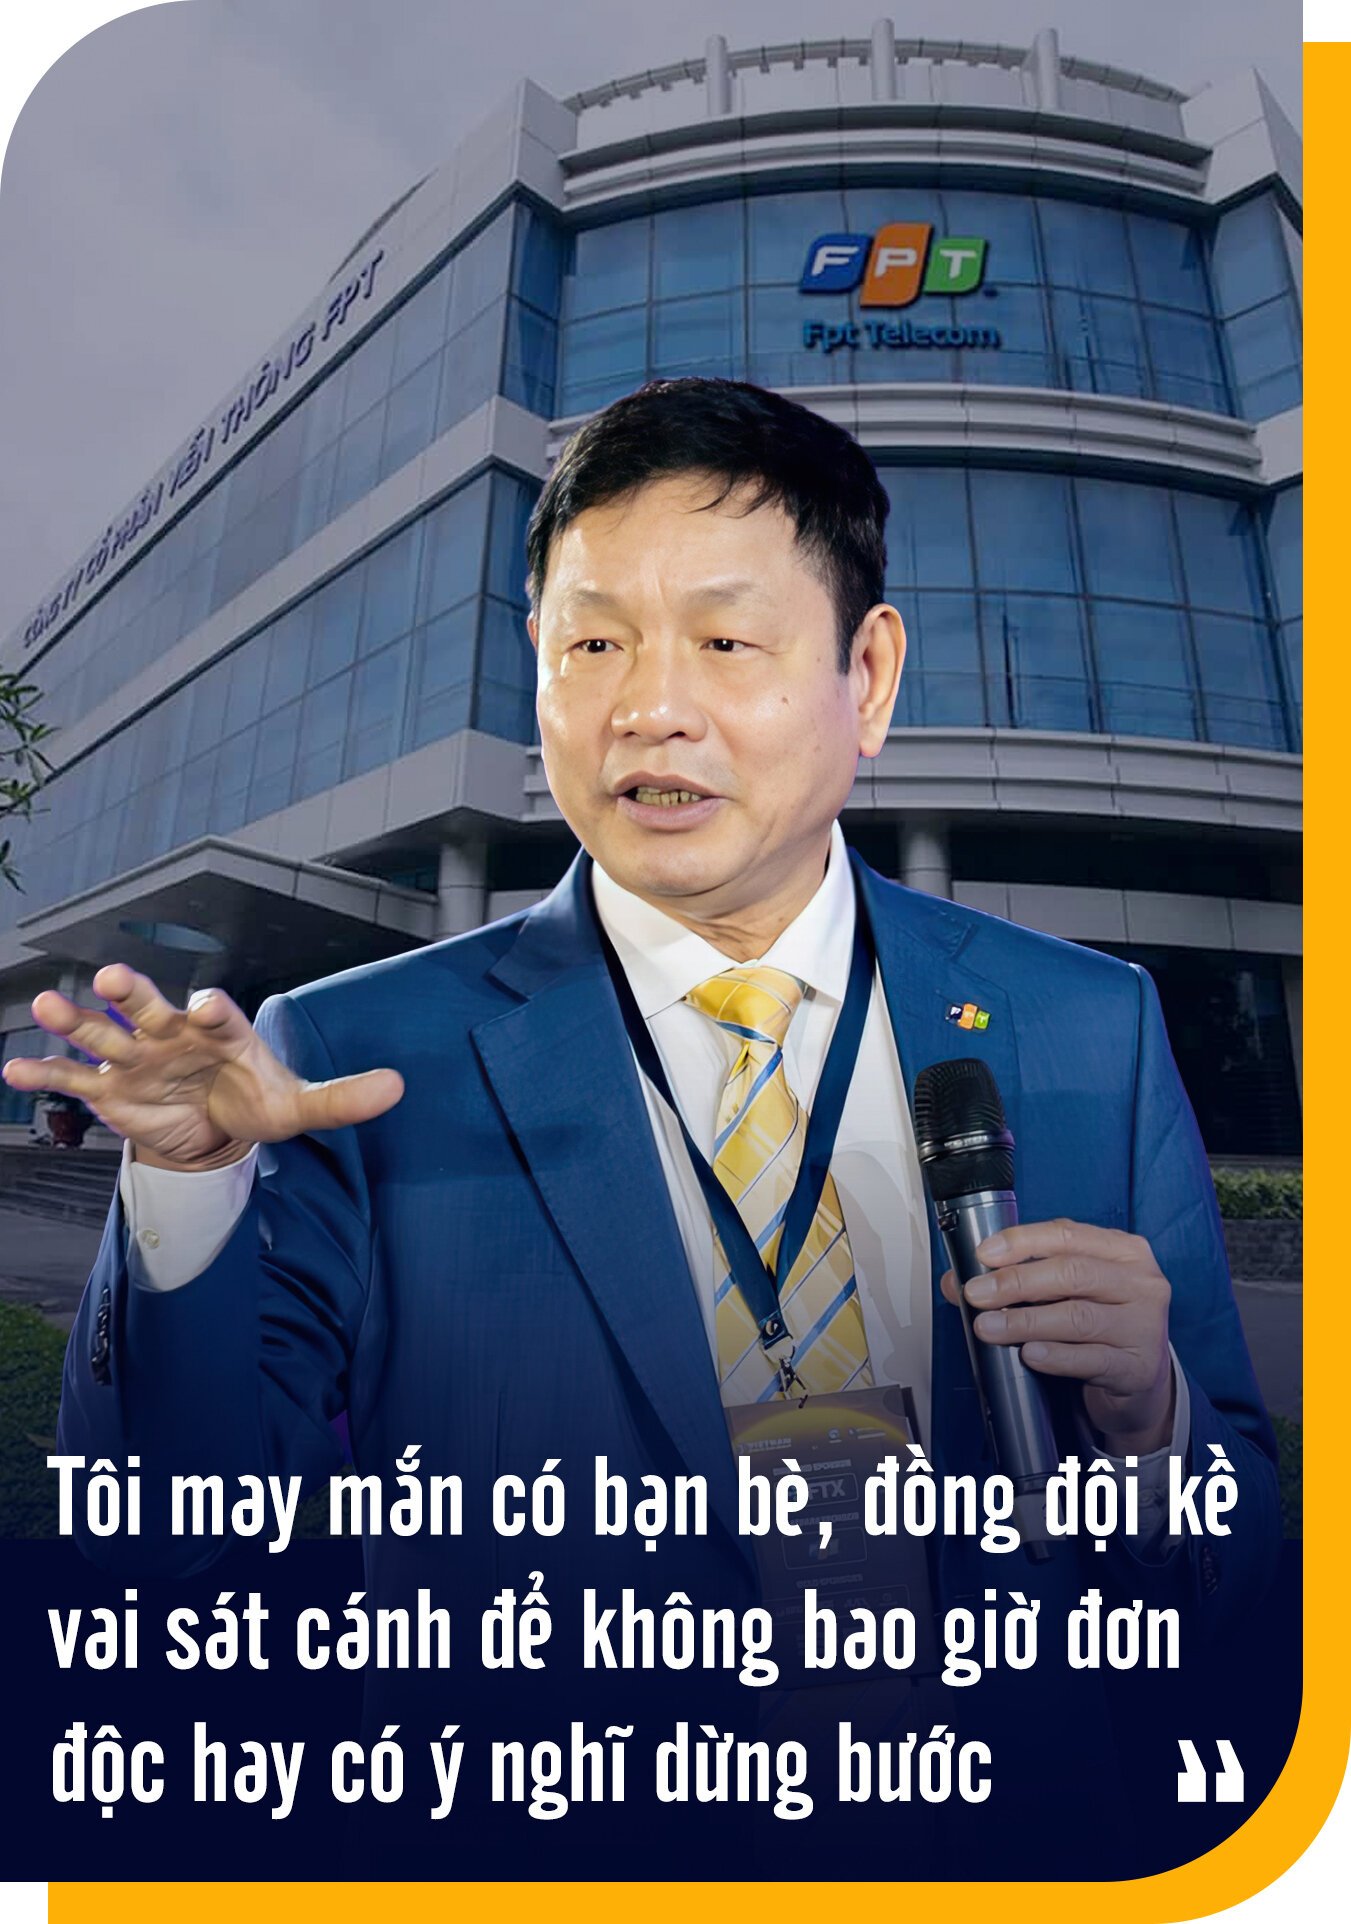 Việc chính của Chủ tịch FPT Trương Gia Bình: Đi bán hàng - Ảnh 14.